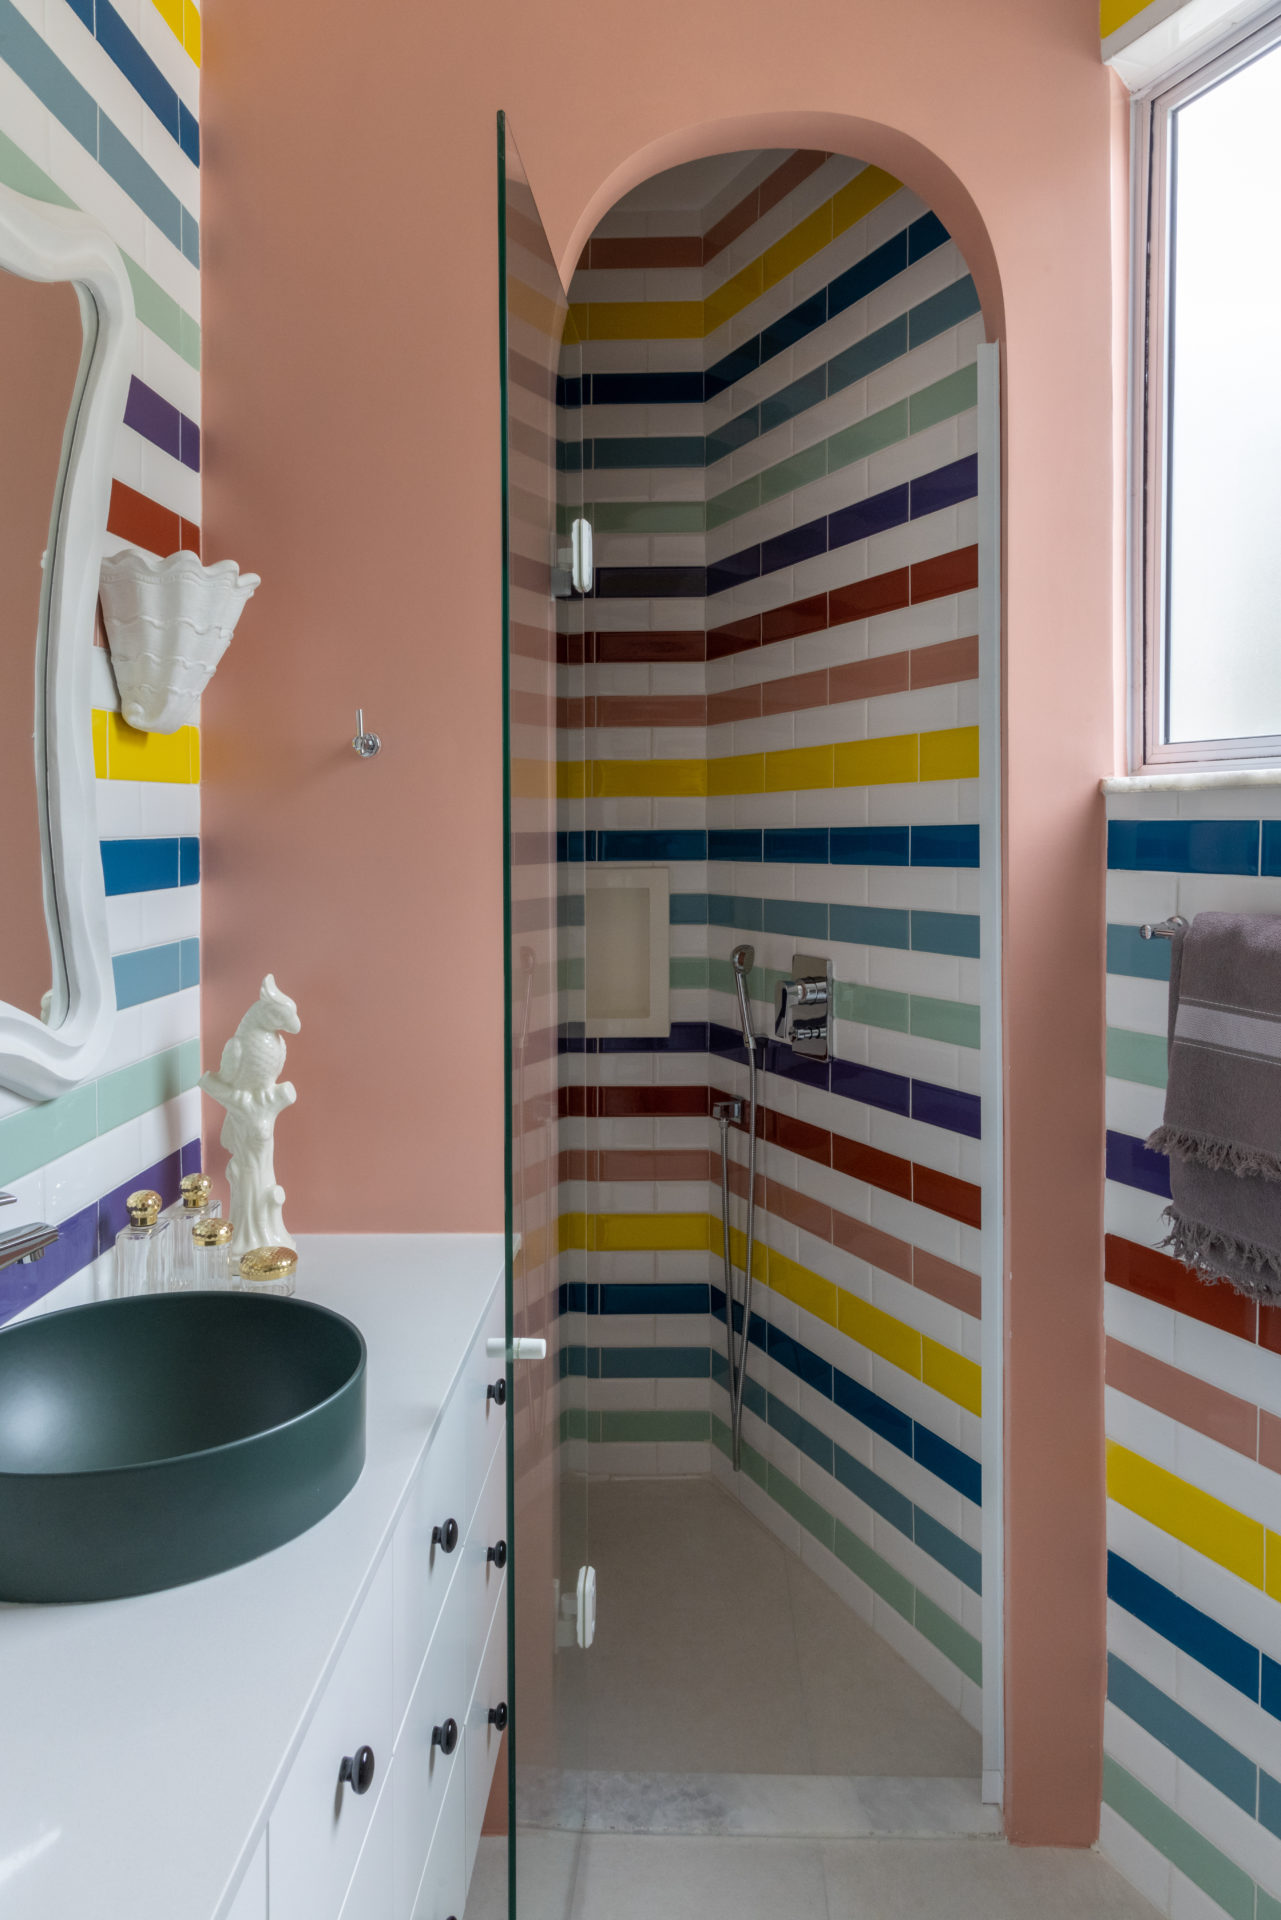 Banheiro com revesido com cerâmicas coloridas e formando faixas intercaladas com branco